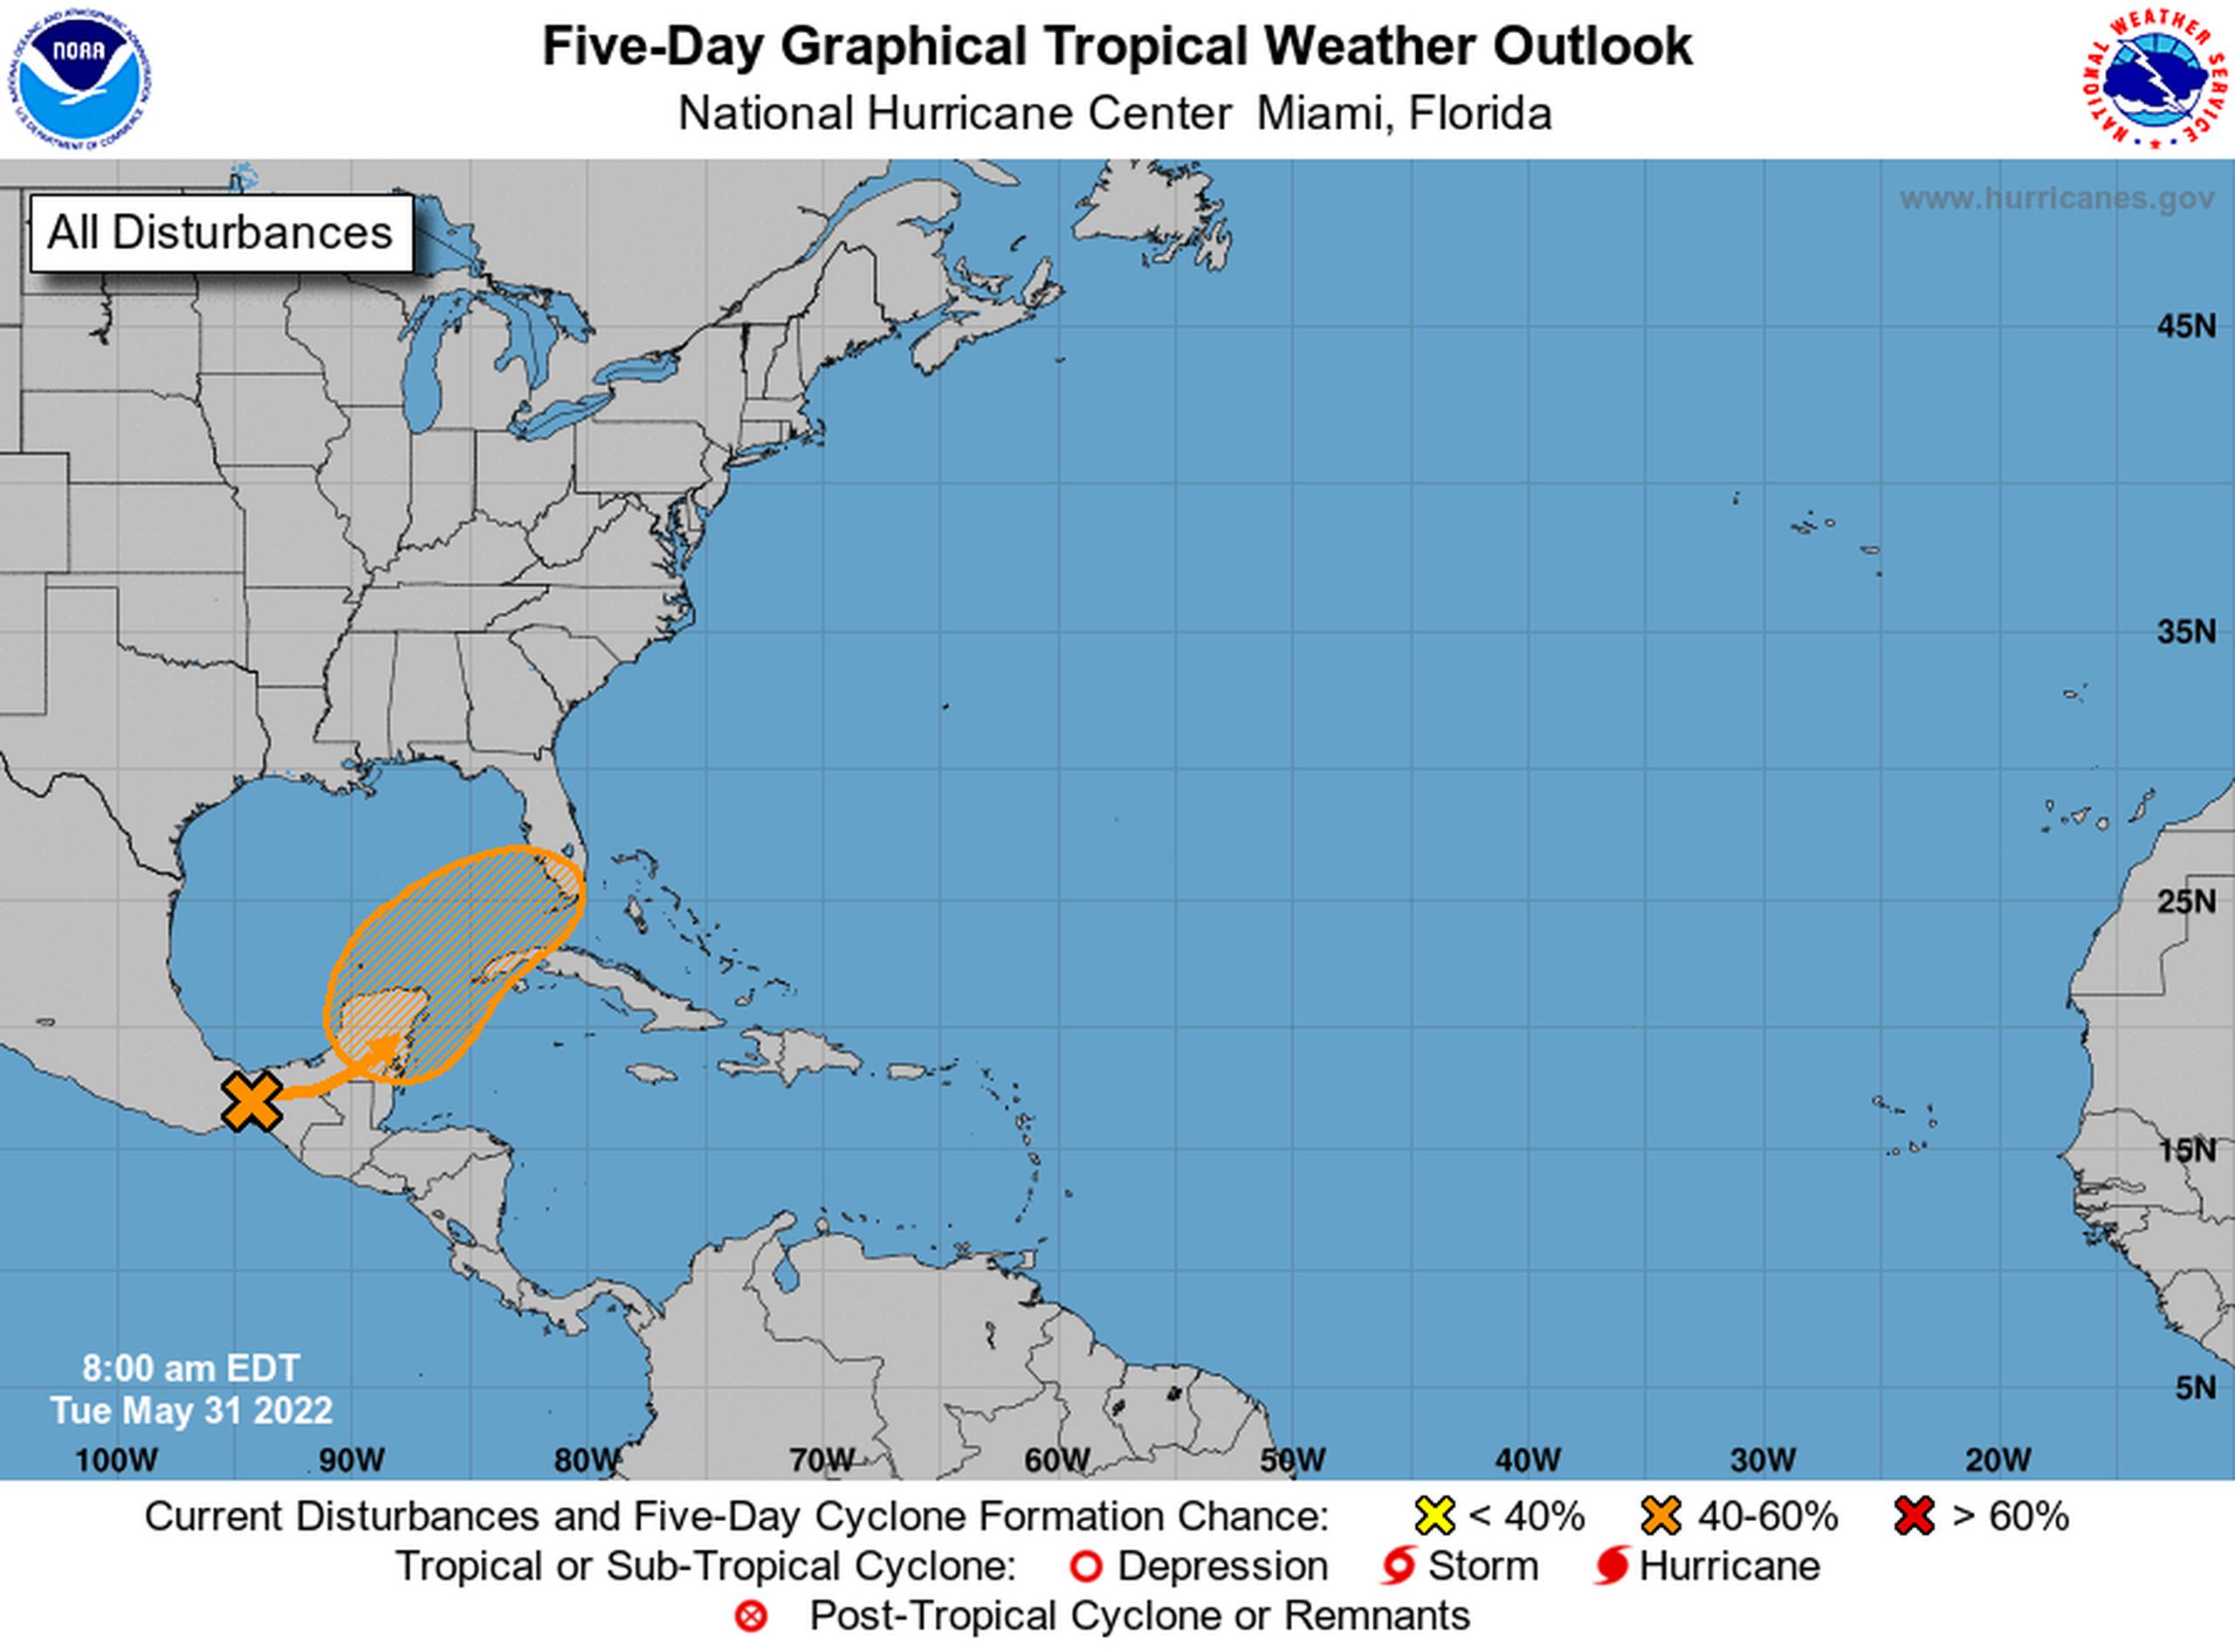 Los pronósticos para un periodo de cinco días indican que hay un 60% de probabilidades de que se desarrolle una tormenta con nombre en el Golfo de México.